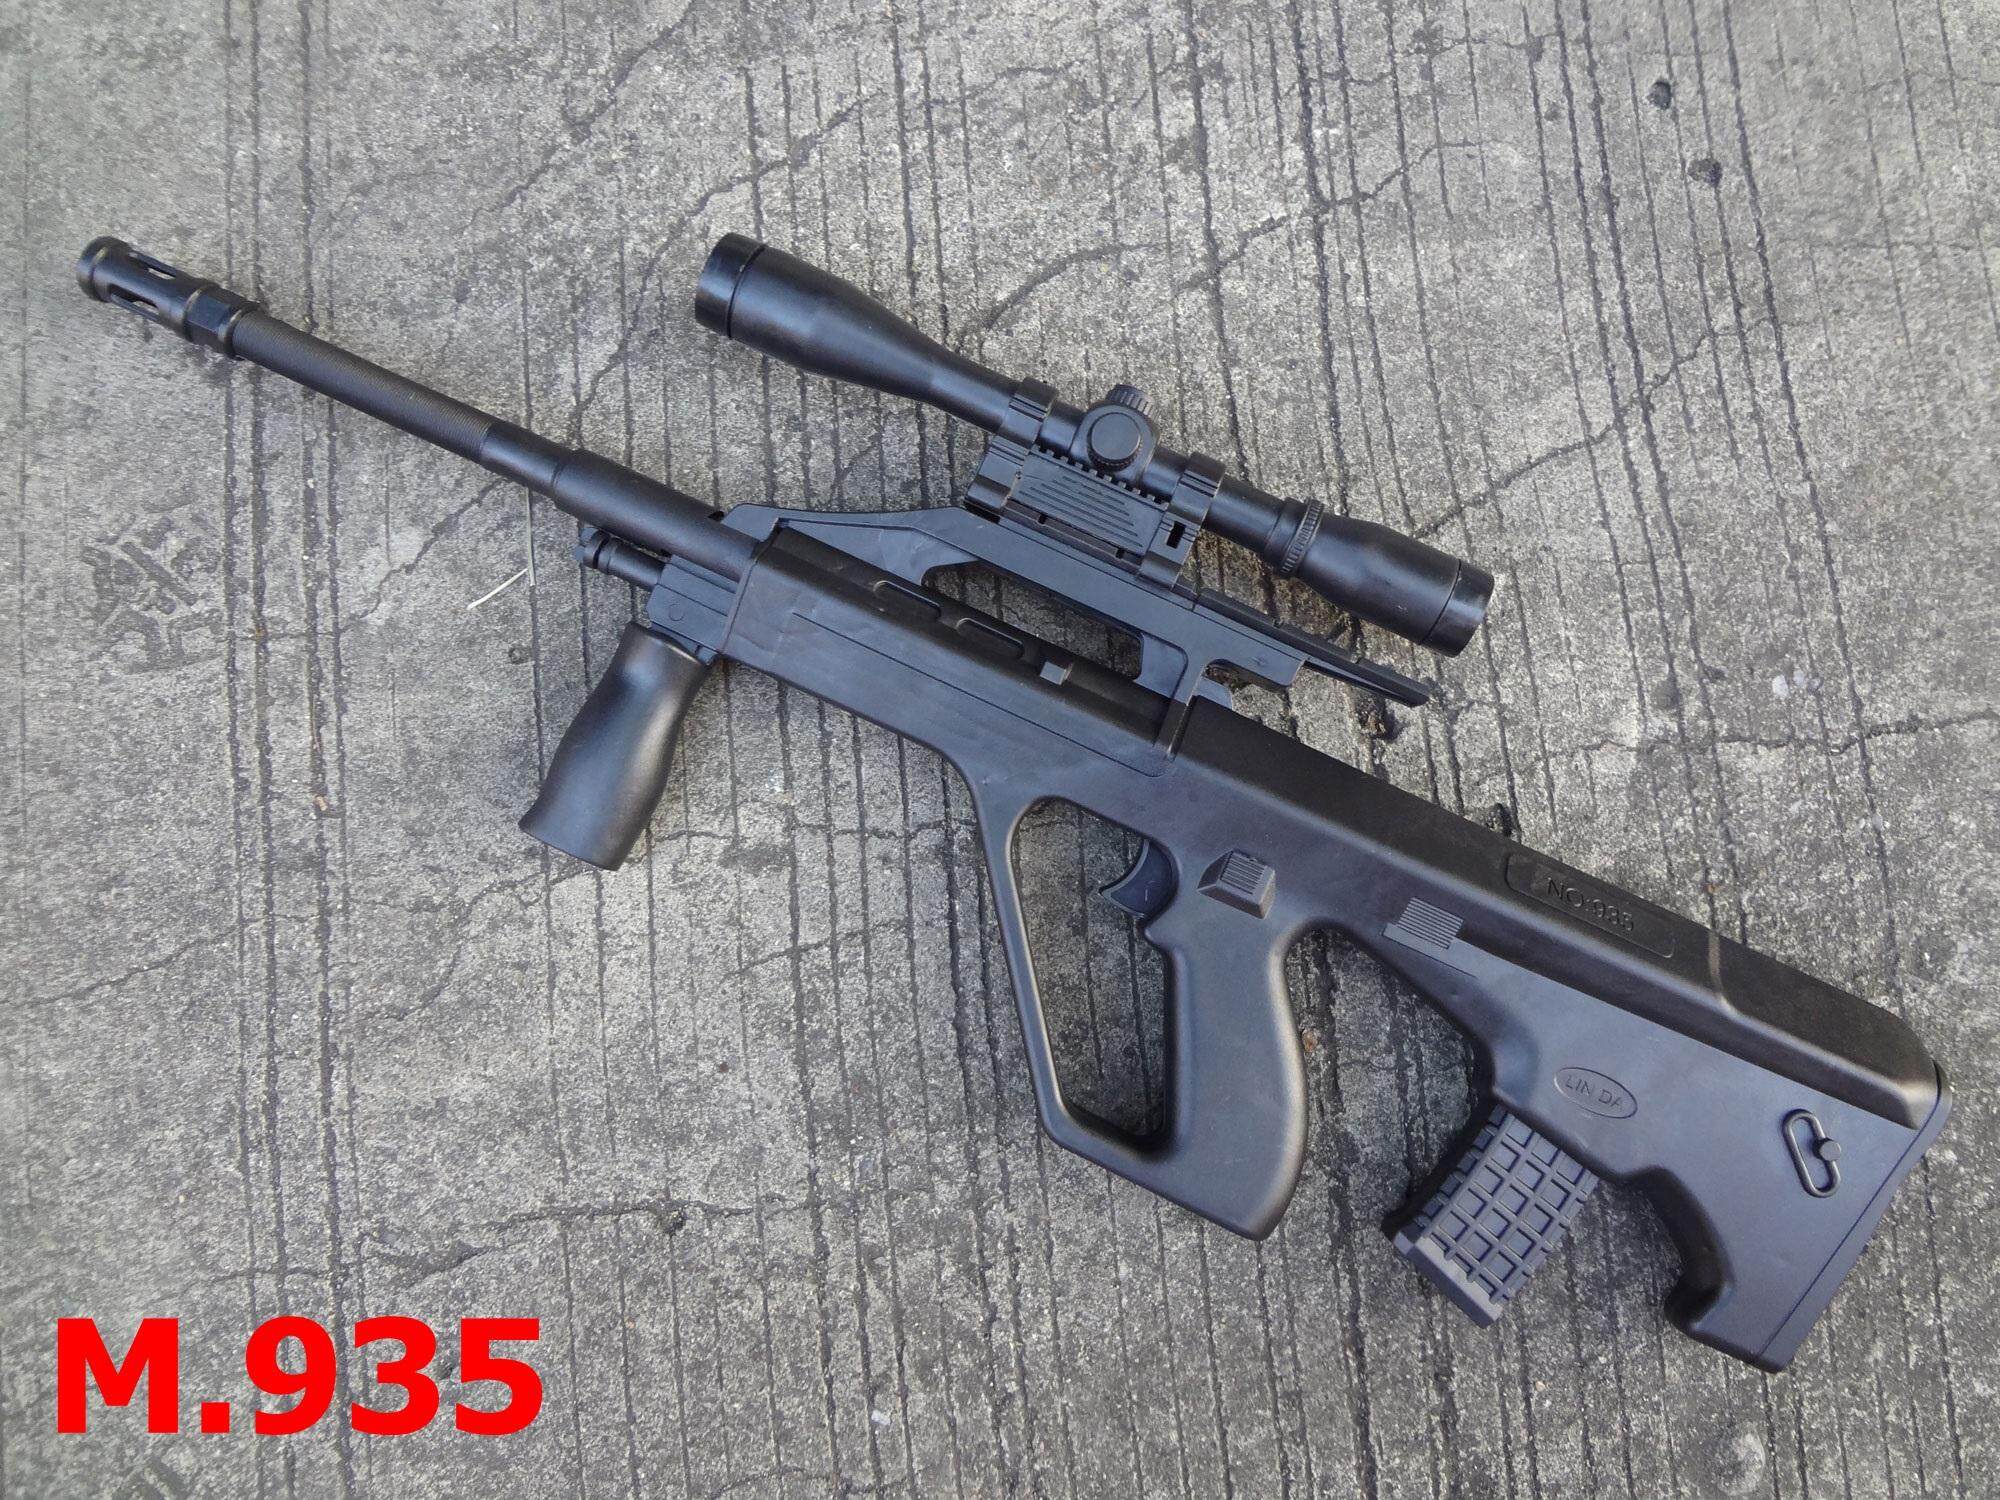 SP  Toys ปืนอัดลม AUG  M.935 บอดี้พลาสติก แถมกระสุน 100 นัด